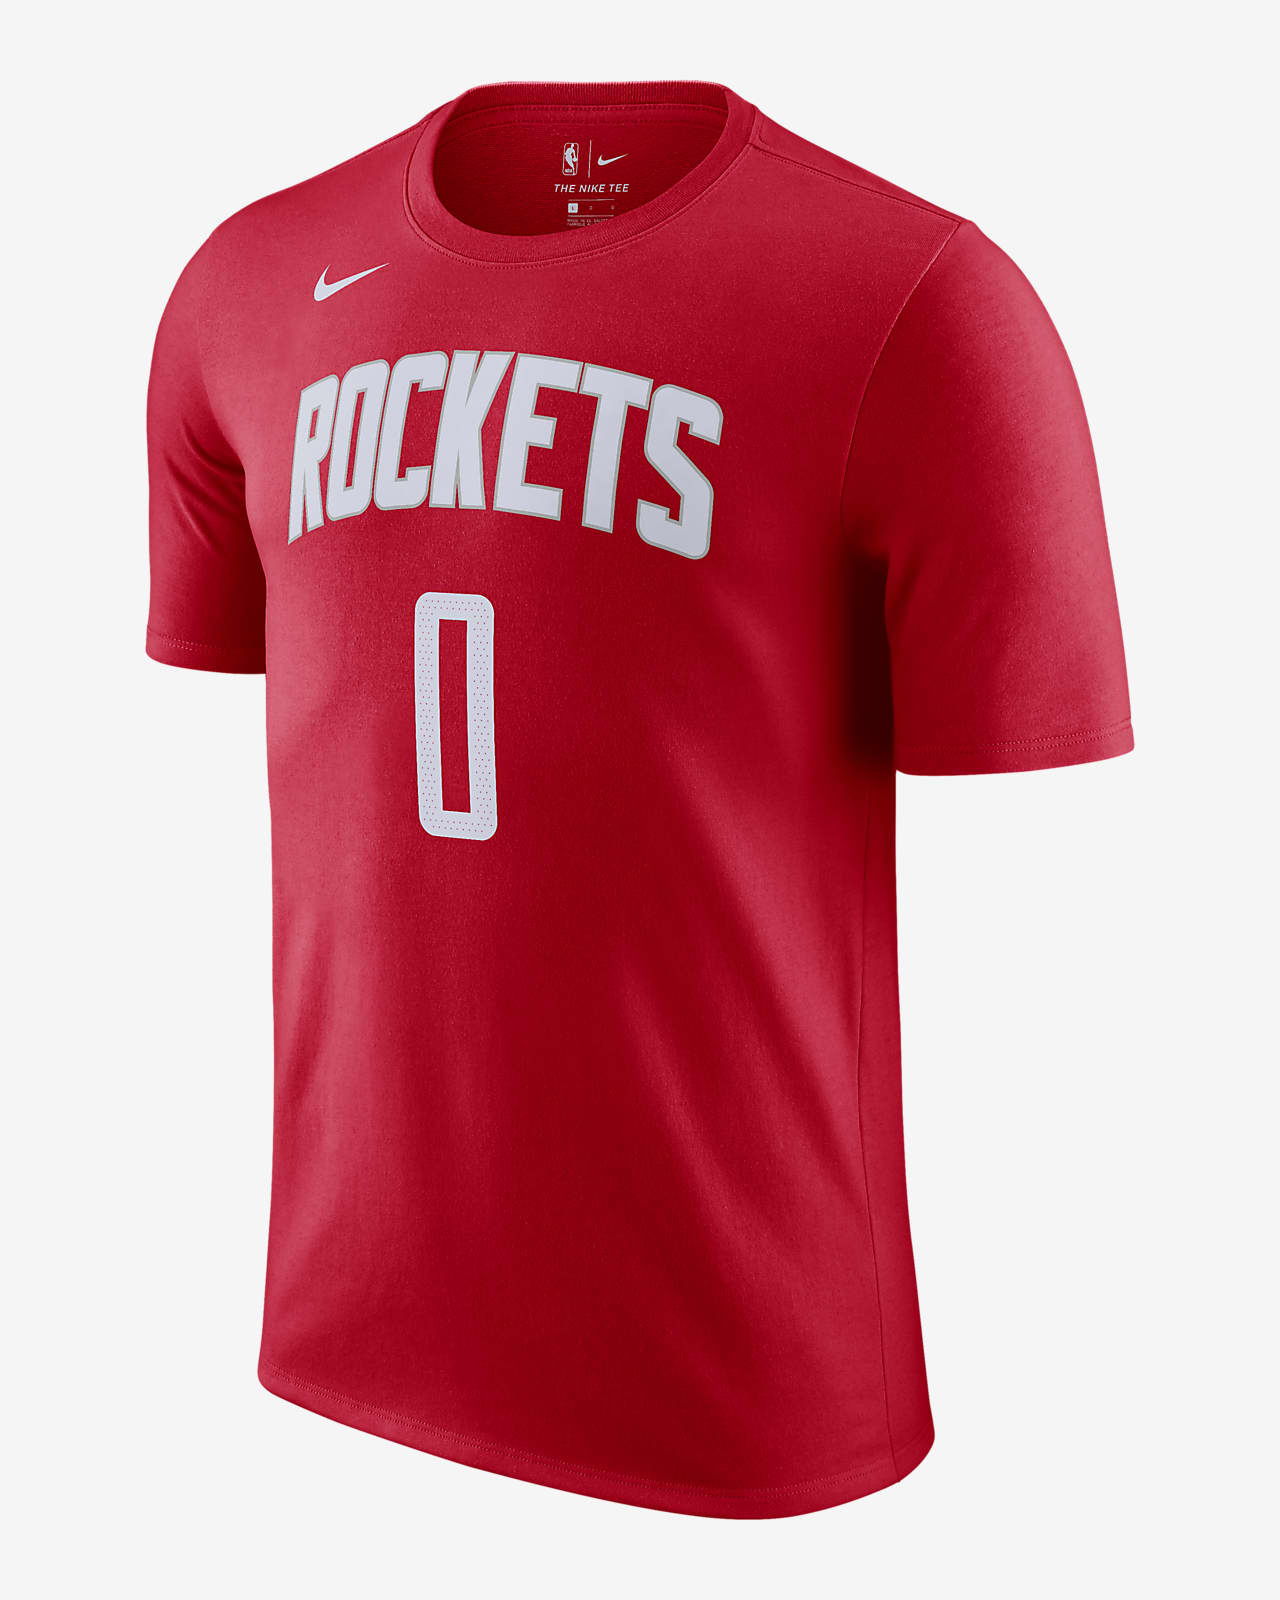 Rockets Men's Nike NBA T-Shirt. Nike.com